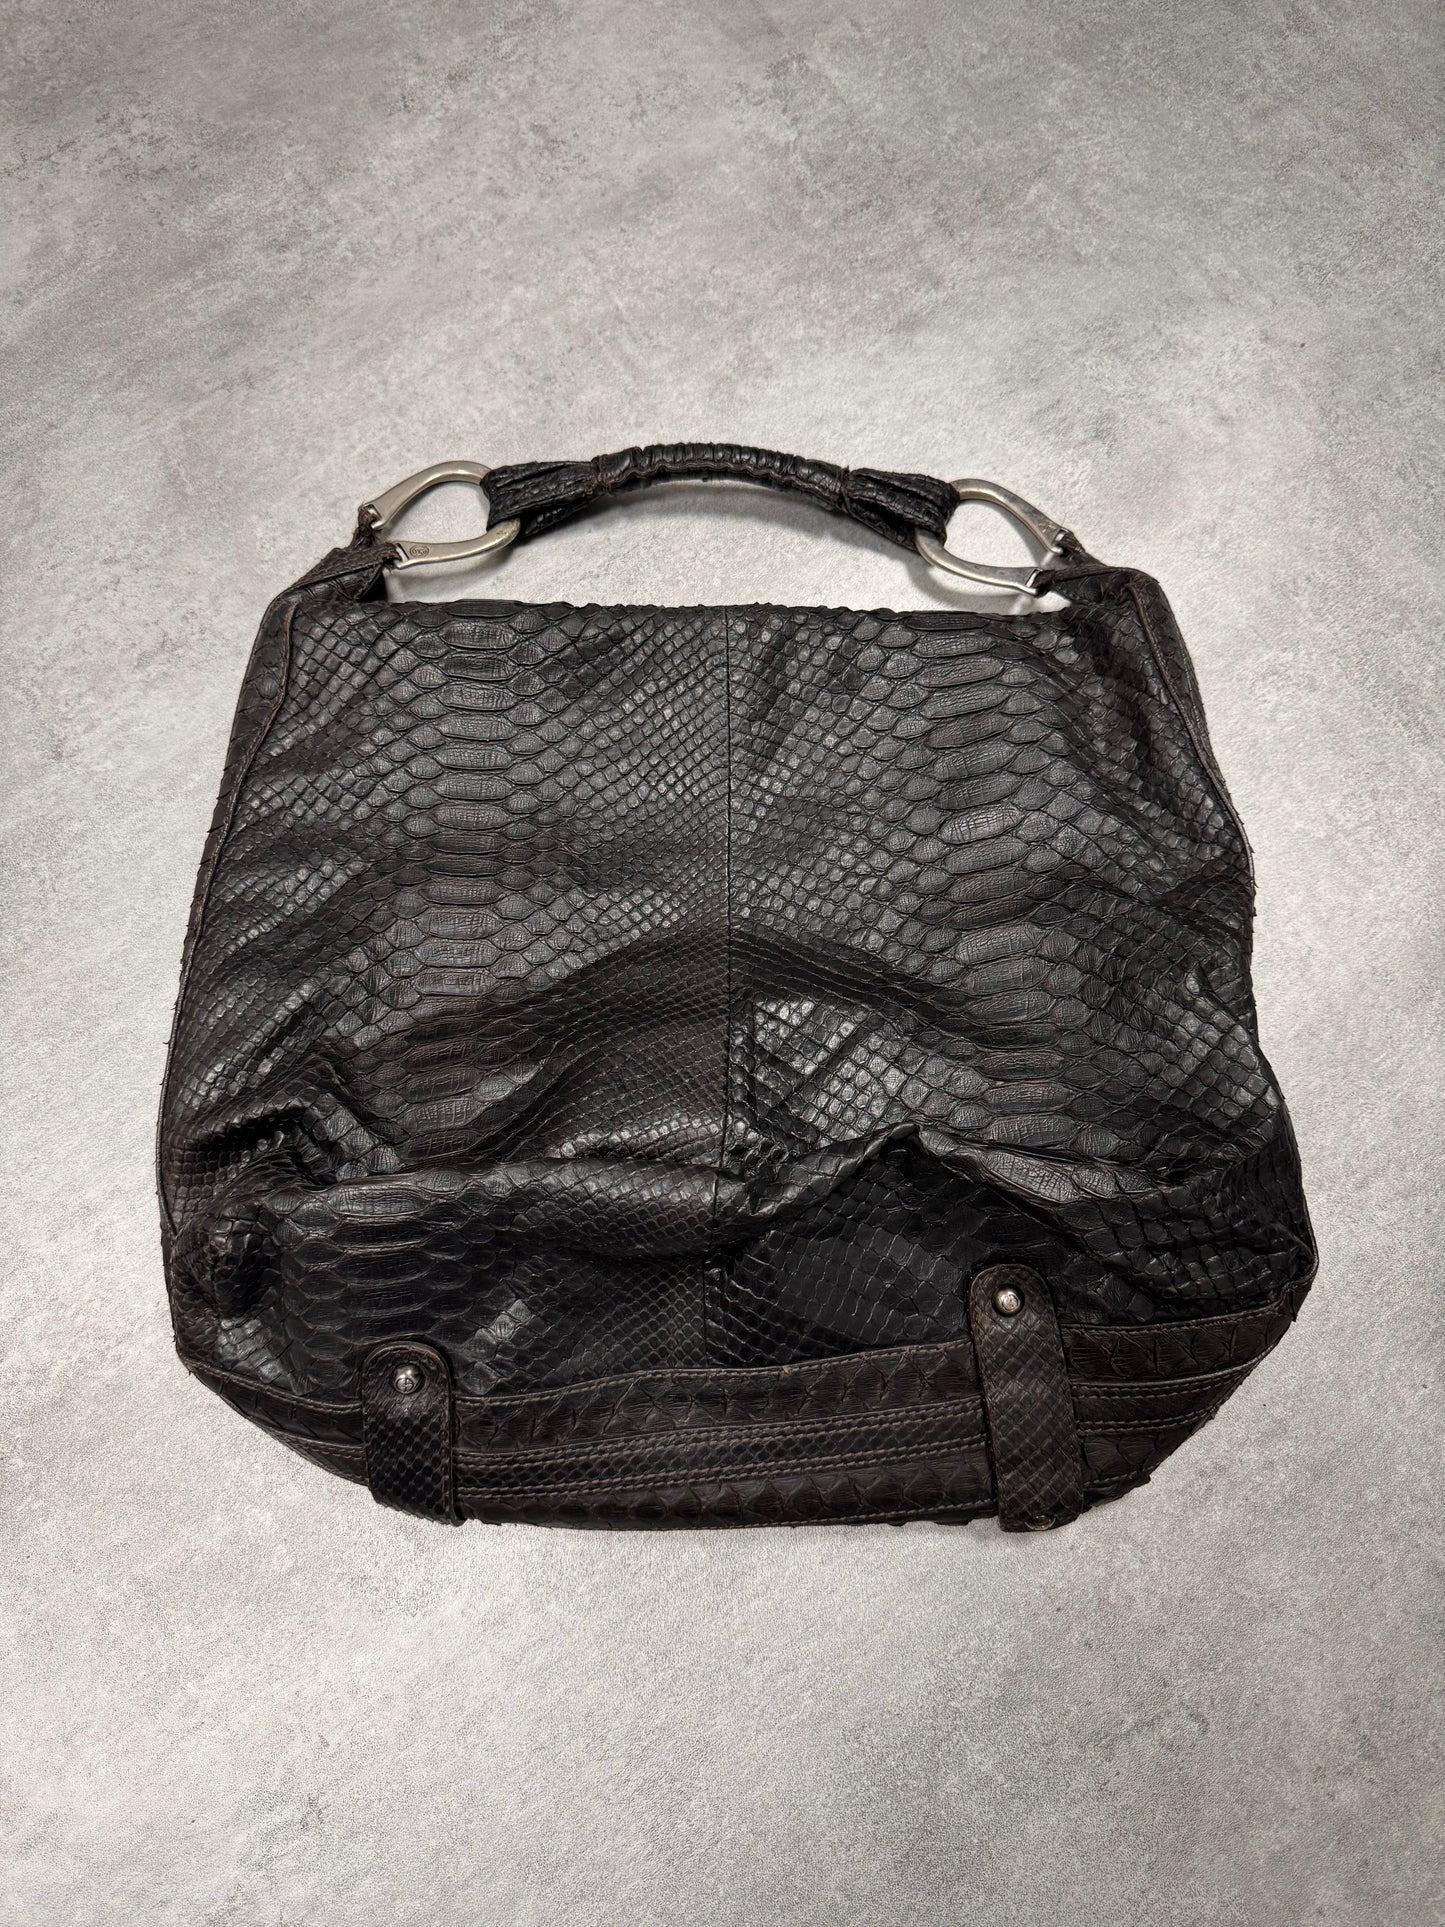 Giorgio Armani Python Handbag (OS)